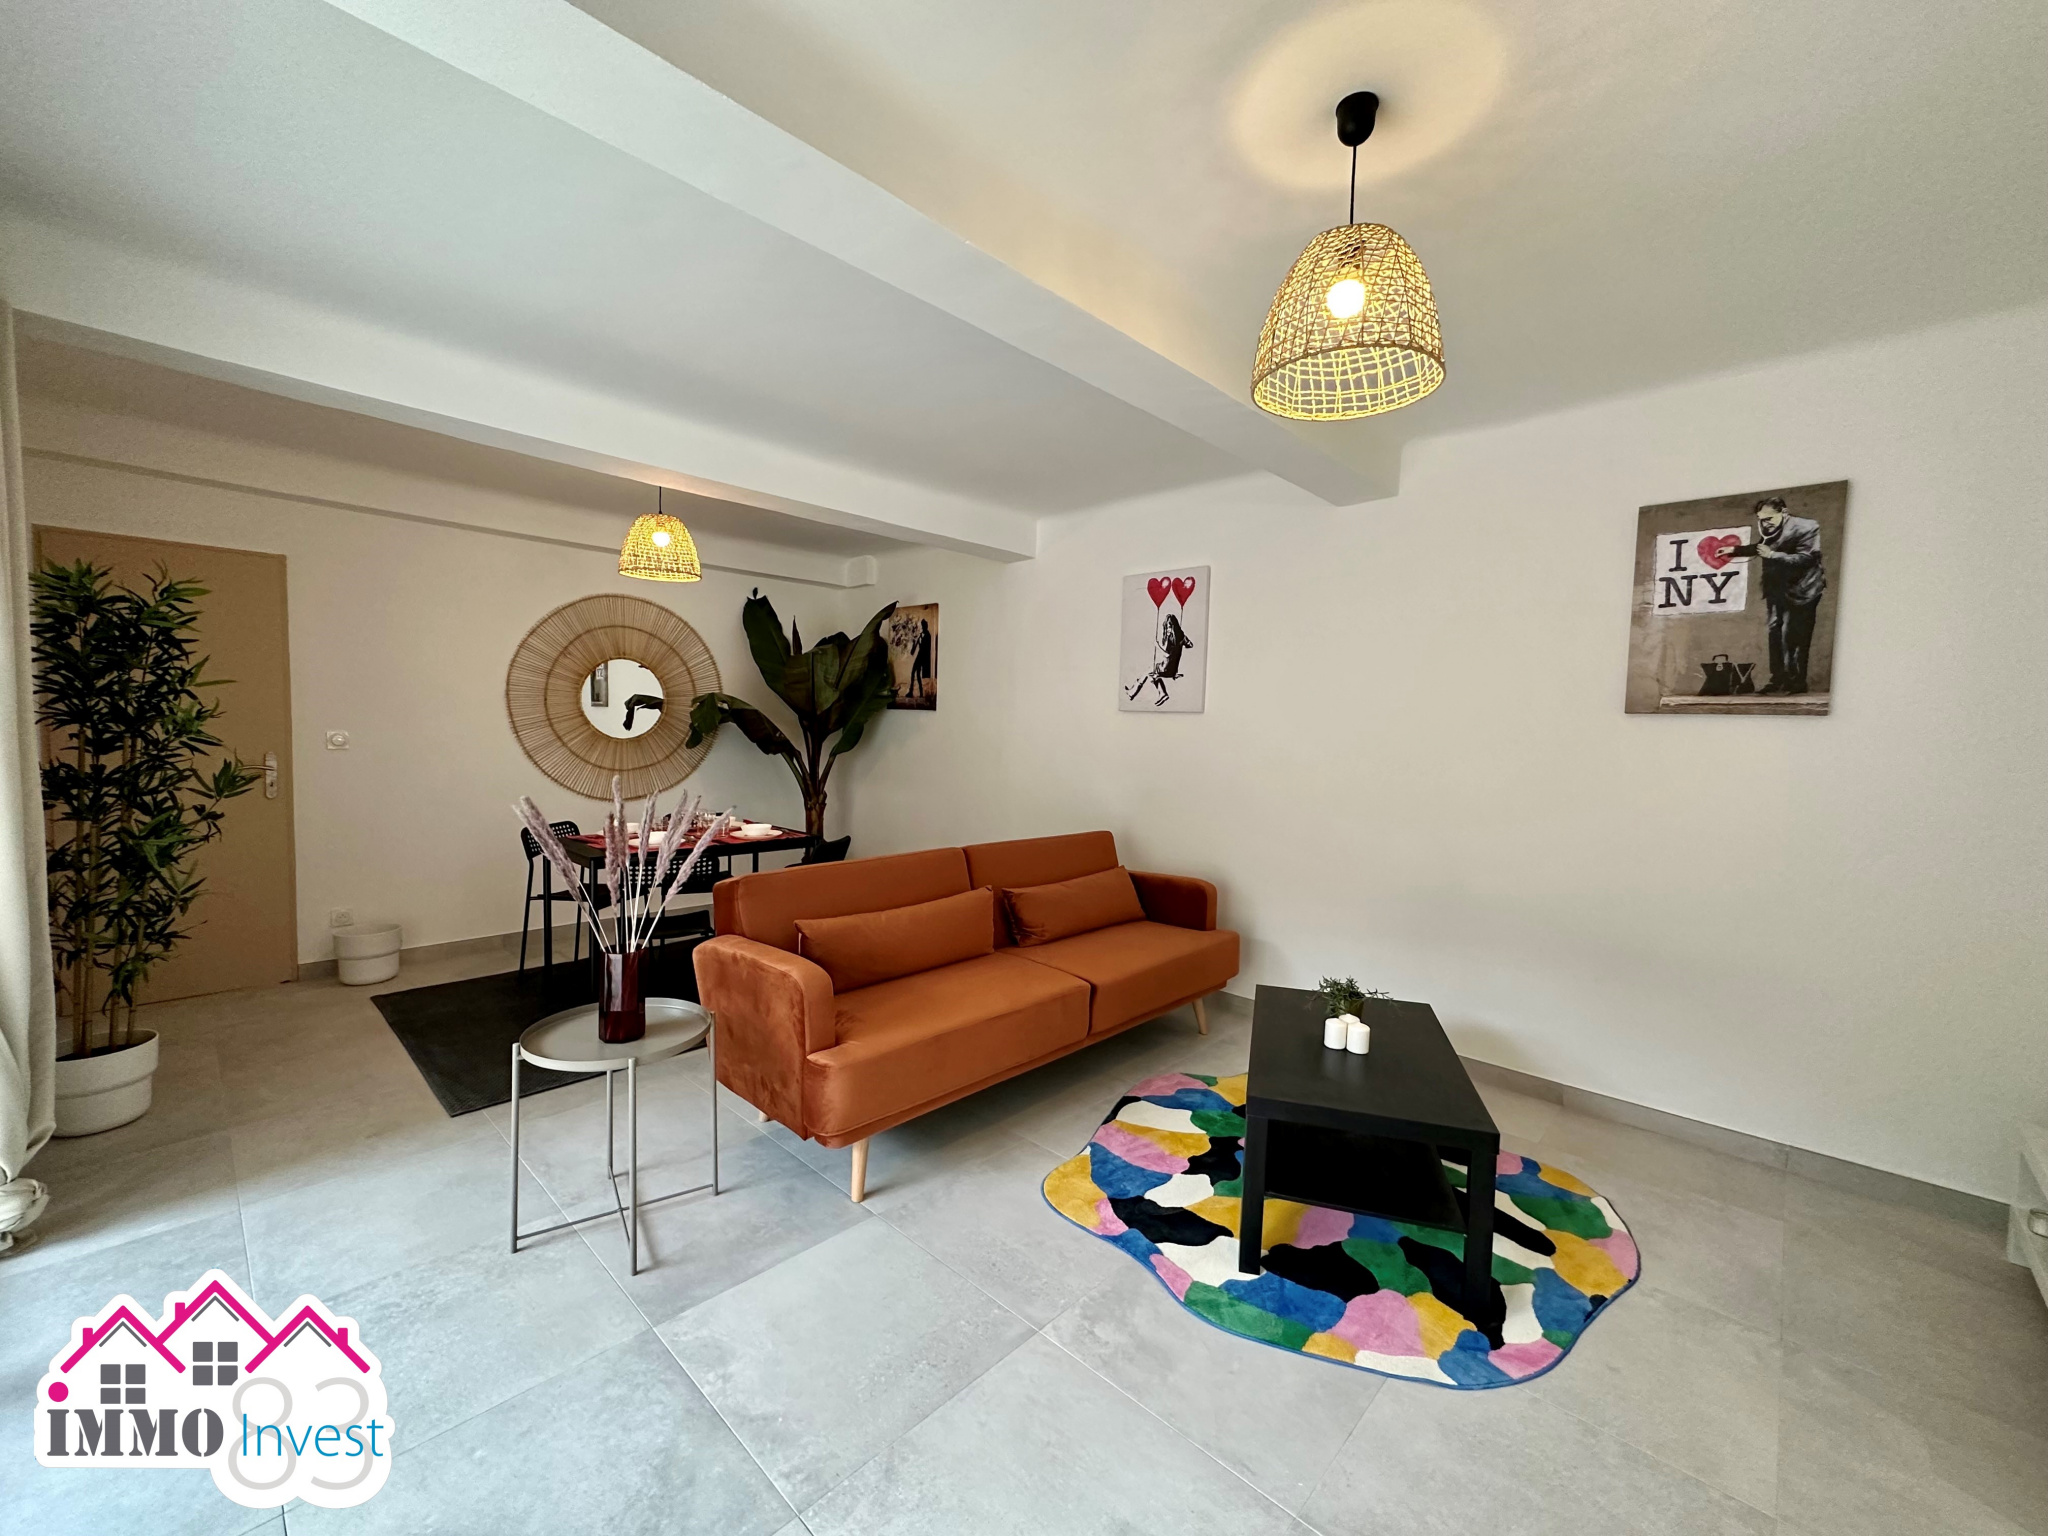 Vente Appartement 47m² 2 Pièces à Toulon (83100) - Immo Invest 83